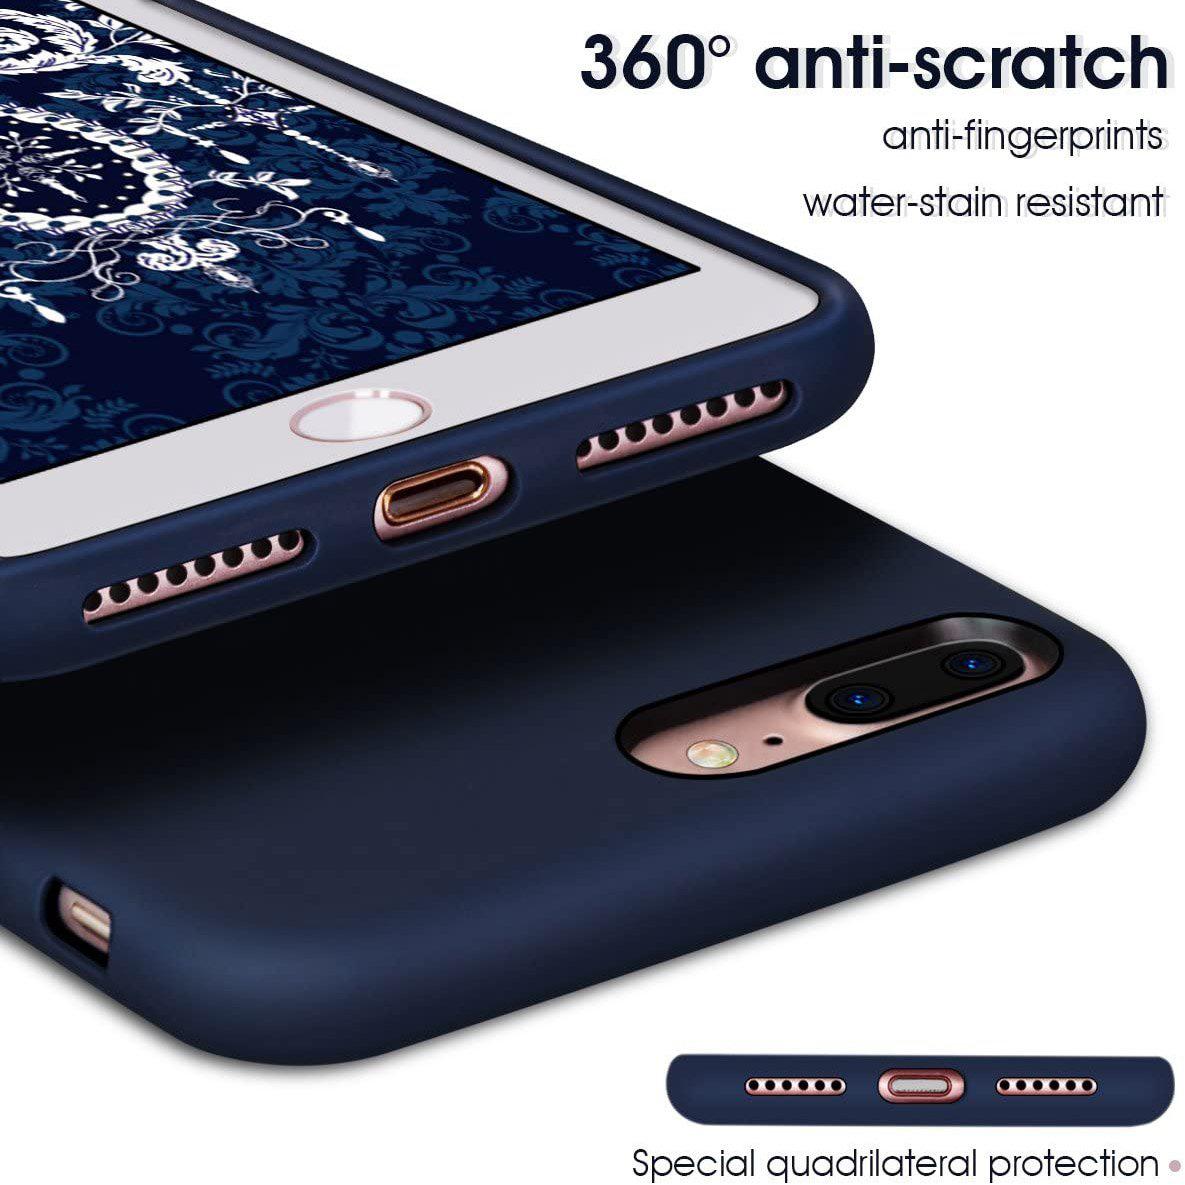 Liquid Silicone Case For Apple iPhone 8 Plus / 7 Plus Luxury Thin Phone Cover Blue